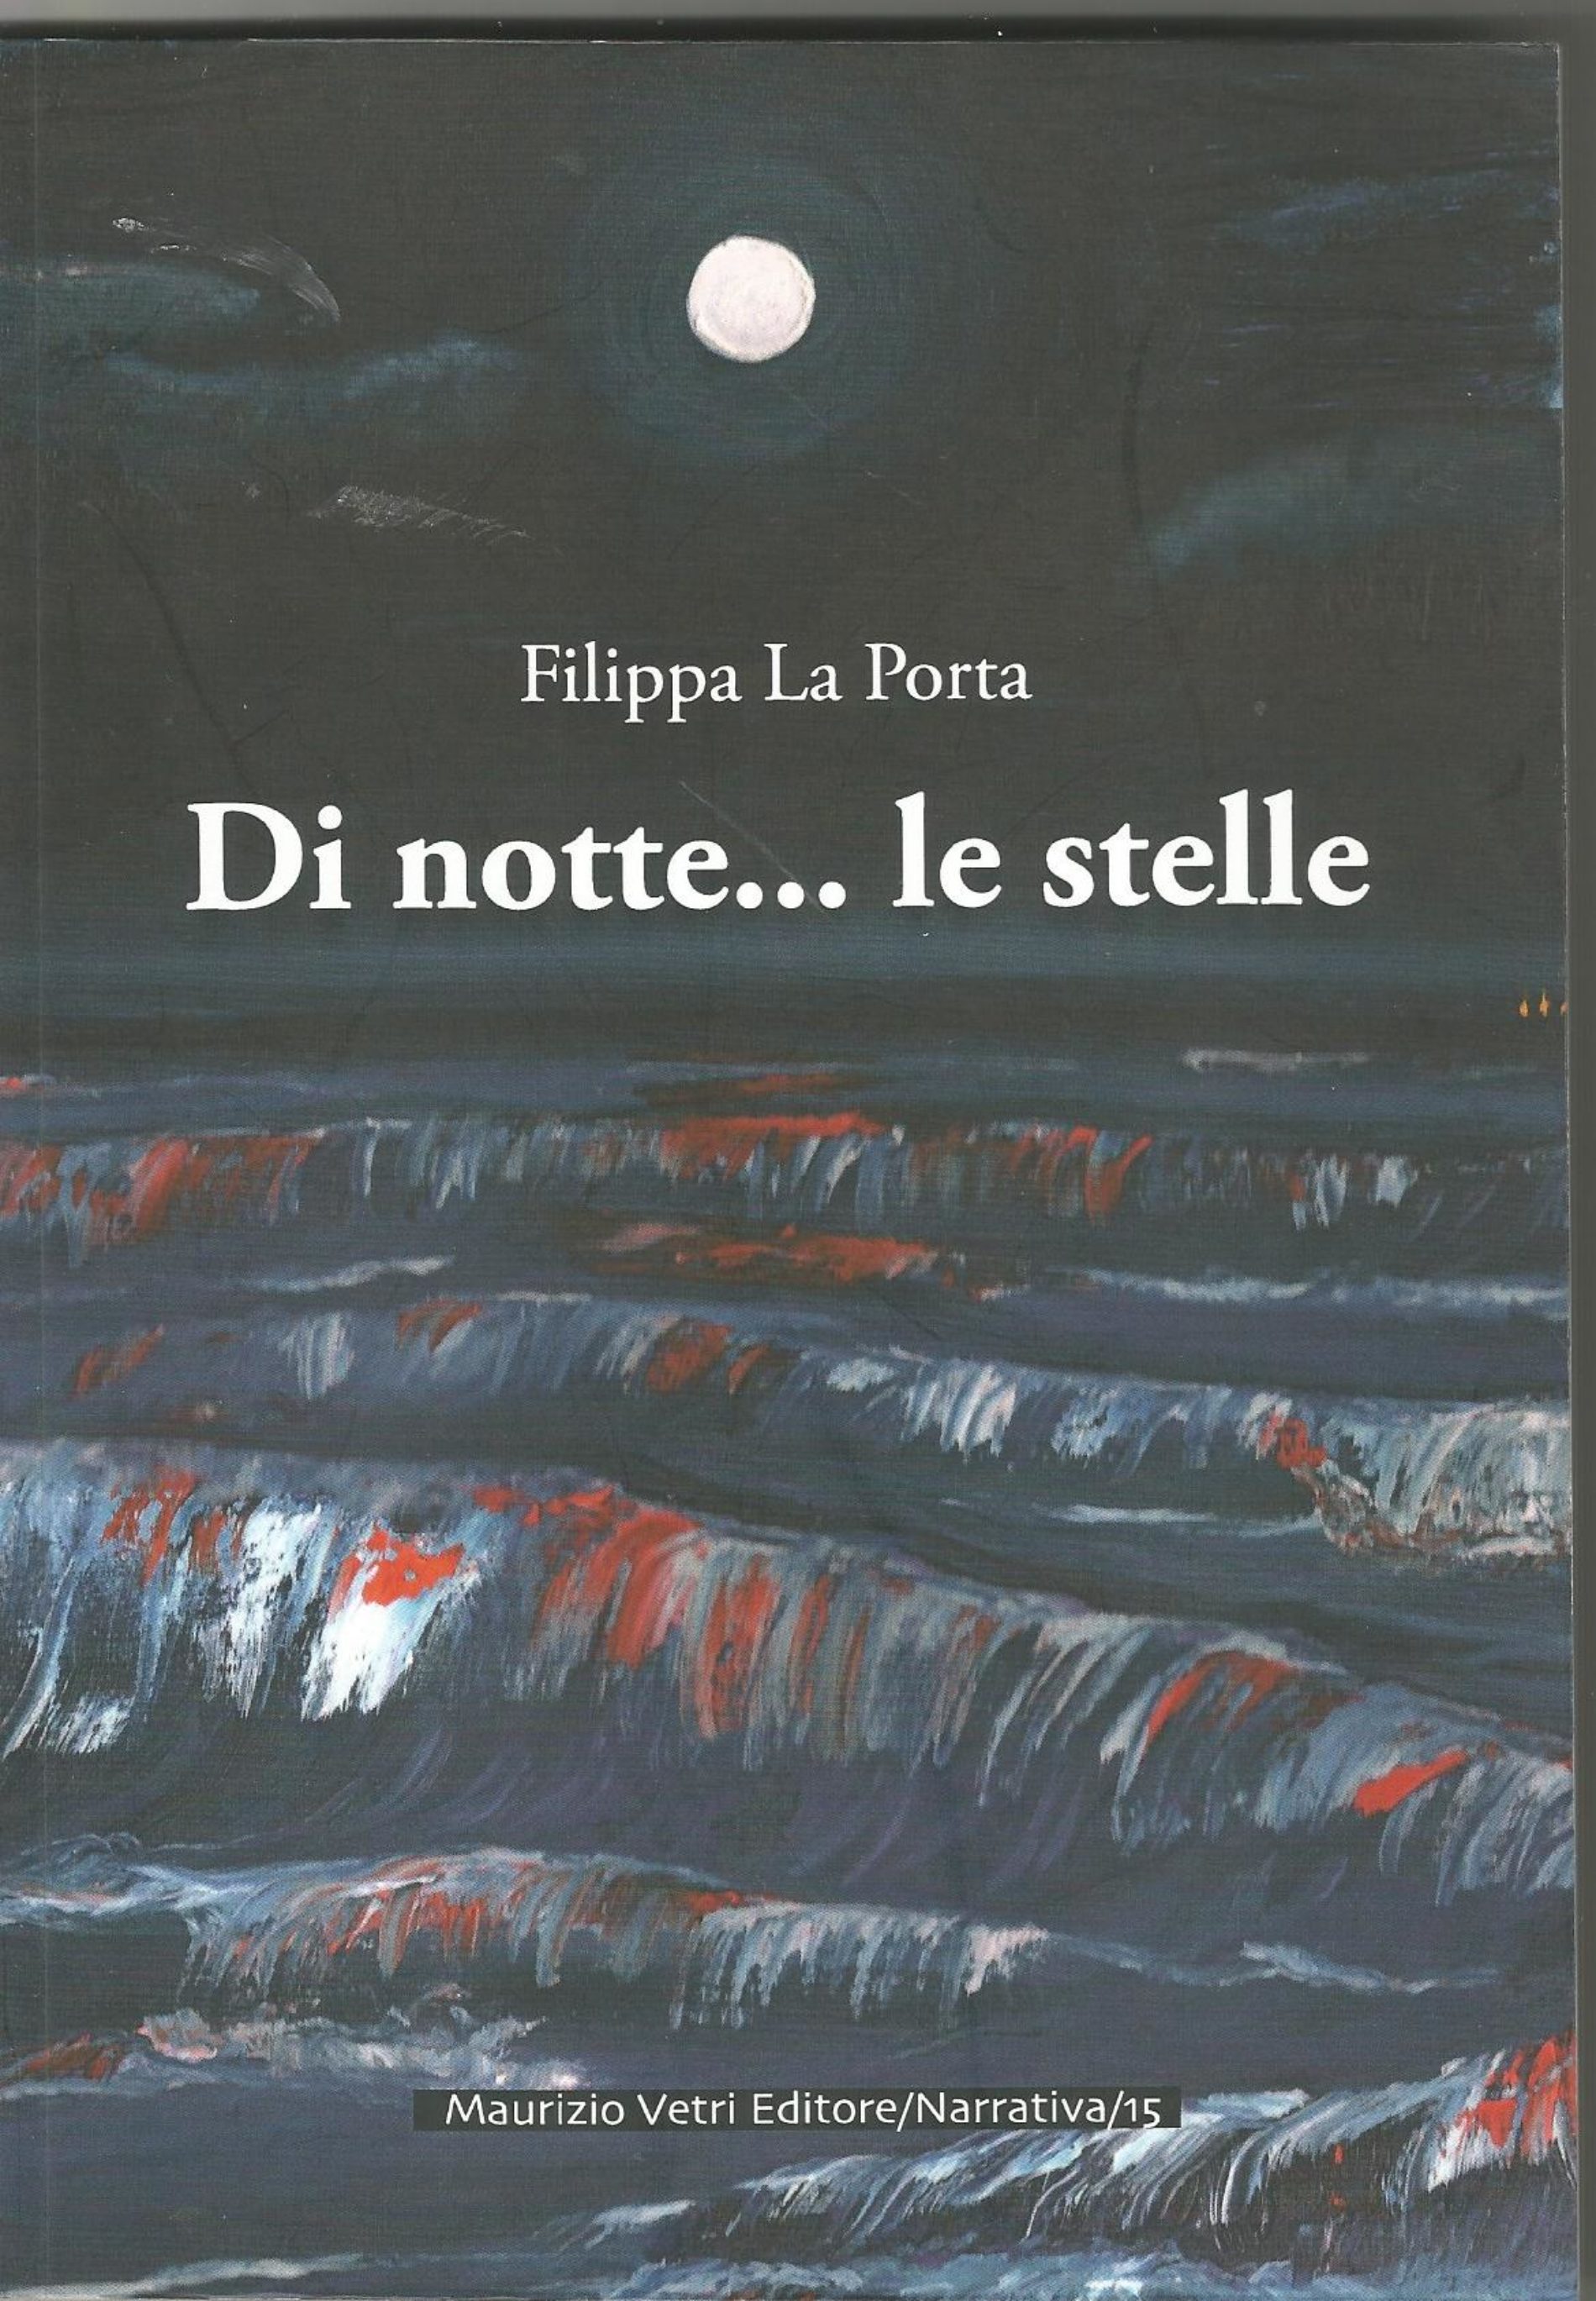 PIETRAPERZIA. Riassunto del libro “Di notte…..le stelle” – autrice Filippa La Porta.